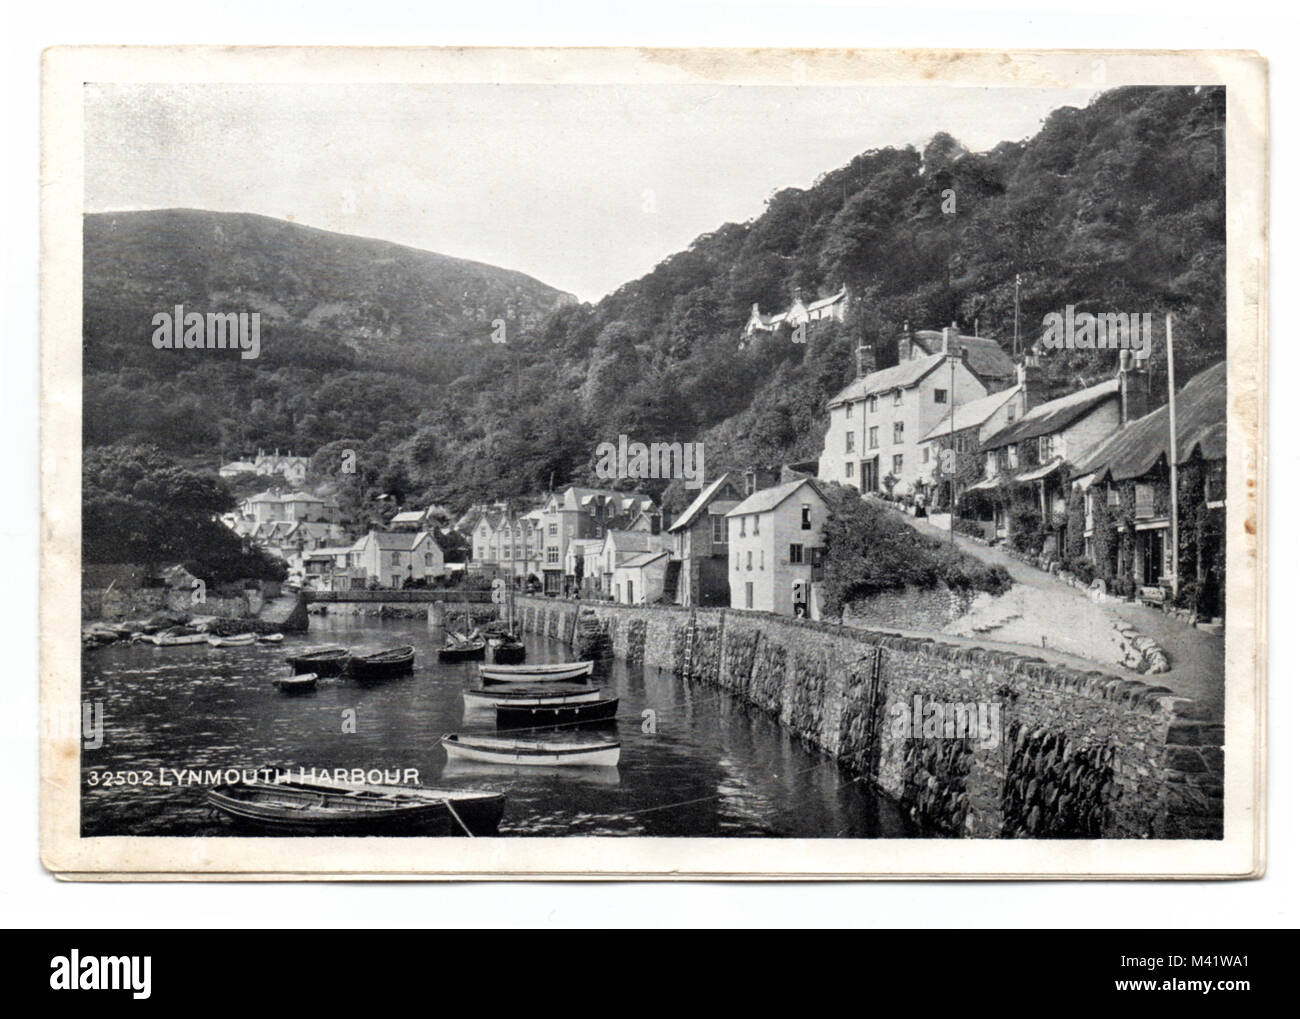 Harbour, N. Lynmouth Devon, England, UK dans une vieille carte postale de 1920 : Lynmouth qu'il l'était avant l'inondation de 1952 Banque D'Images